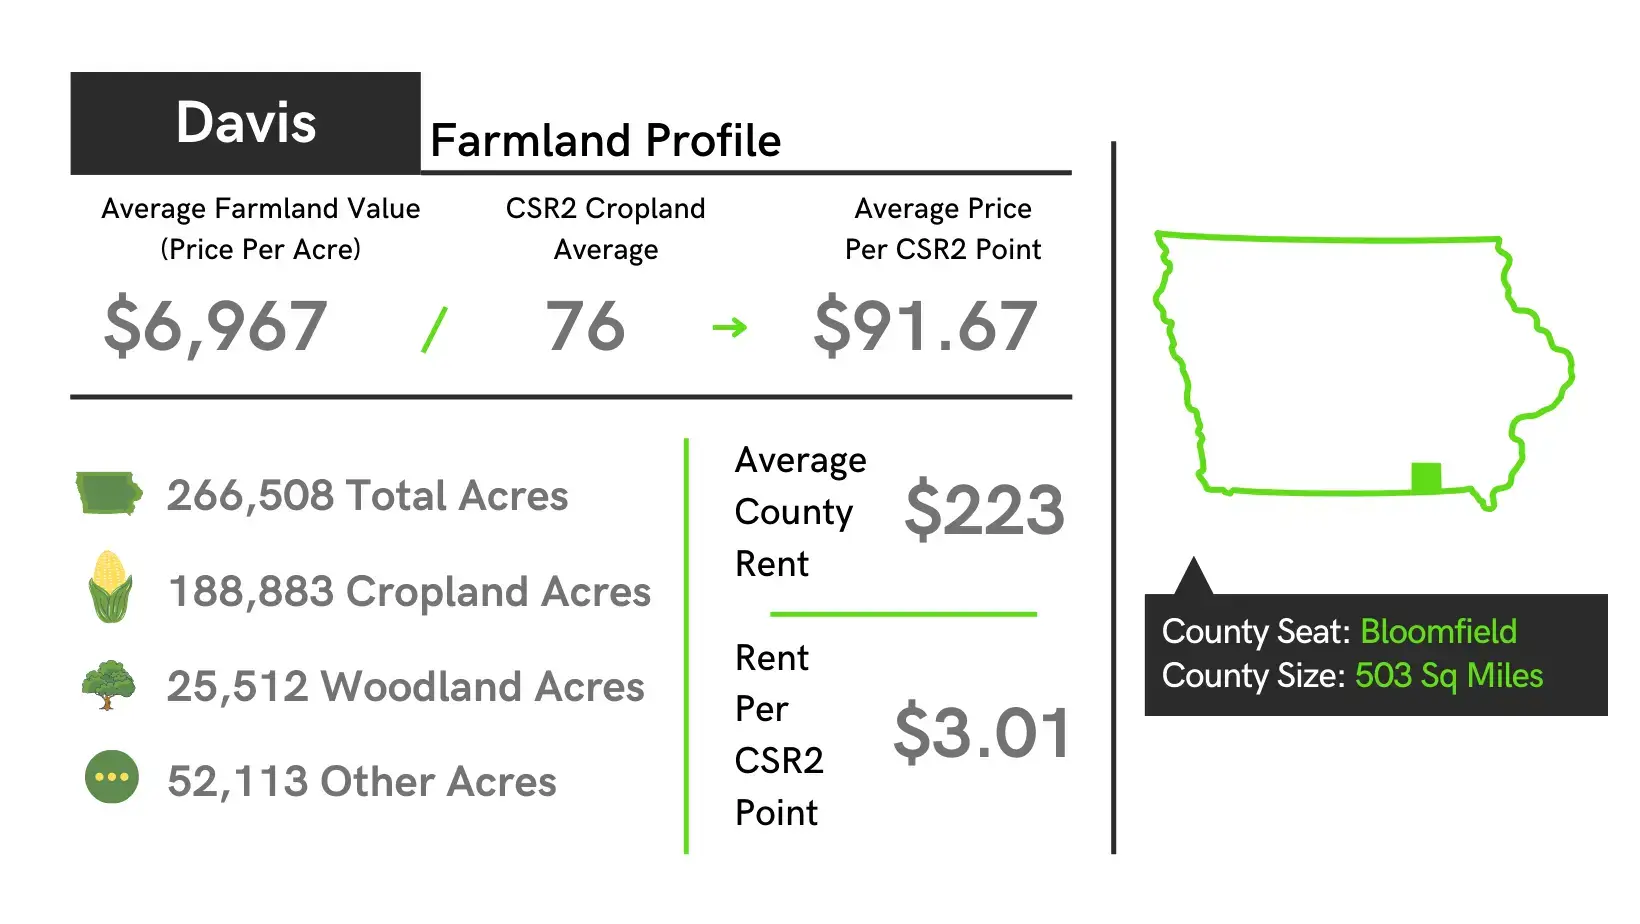 Davis County Farmland Profile